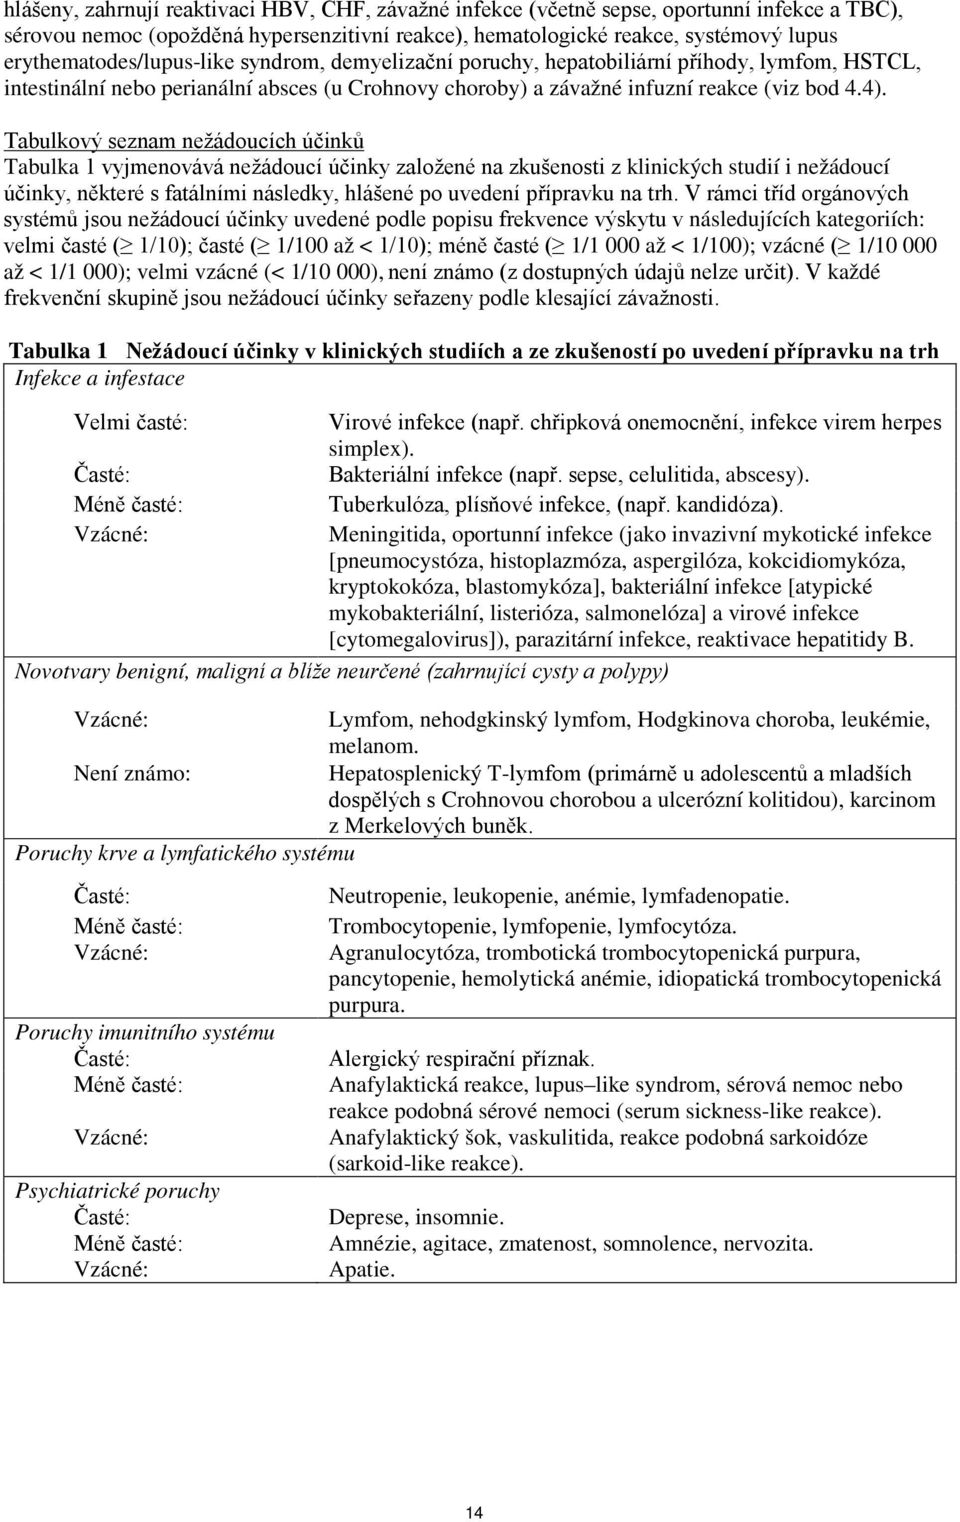 Tabulkový seznam nežádoucích účinků Tabulka 1 vyjmenovává nežádoucí účinky založené na zkušenosti z klinických studií i nežádoucí účinky, některé s fatálními následky, hlášené po uvedení přípravku na